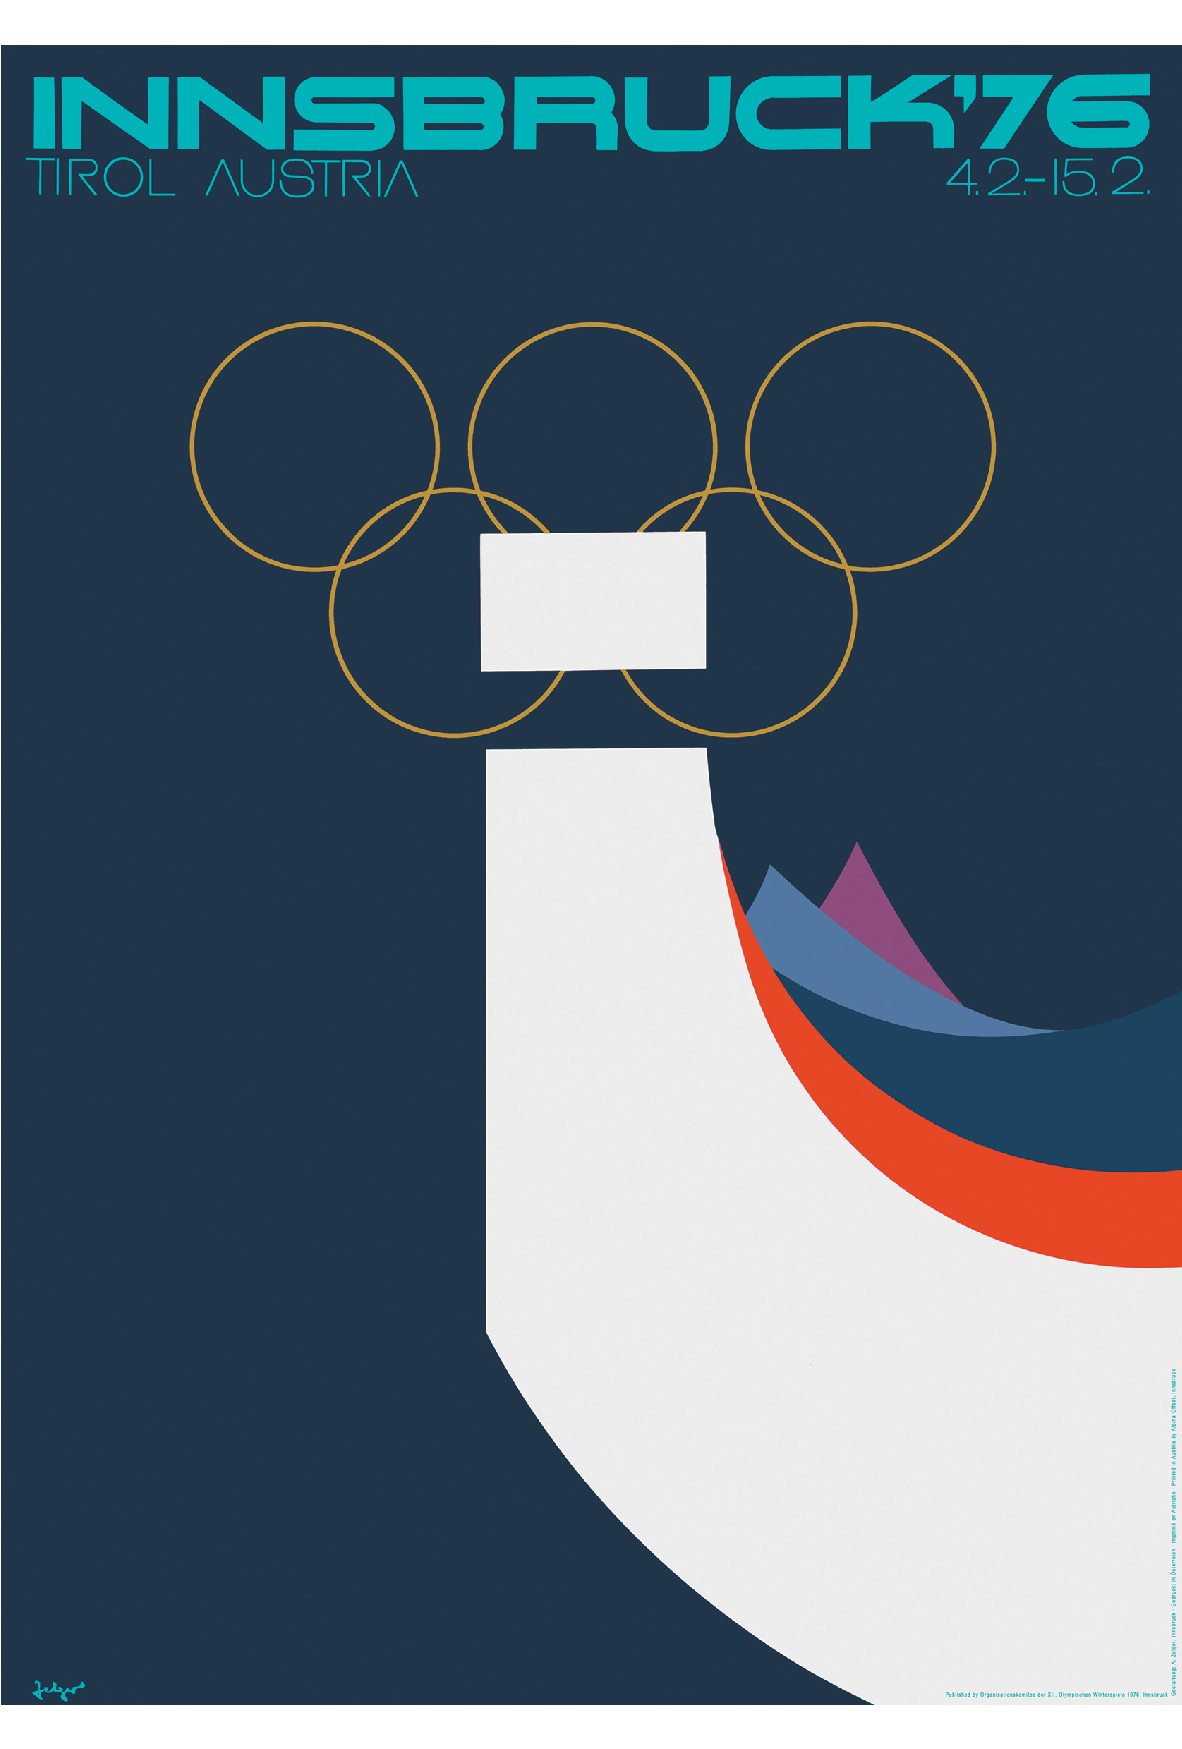 冬季奥运会海报简单图片